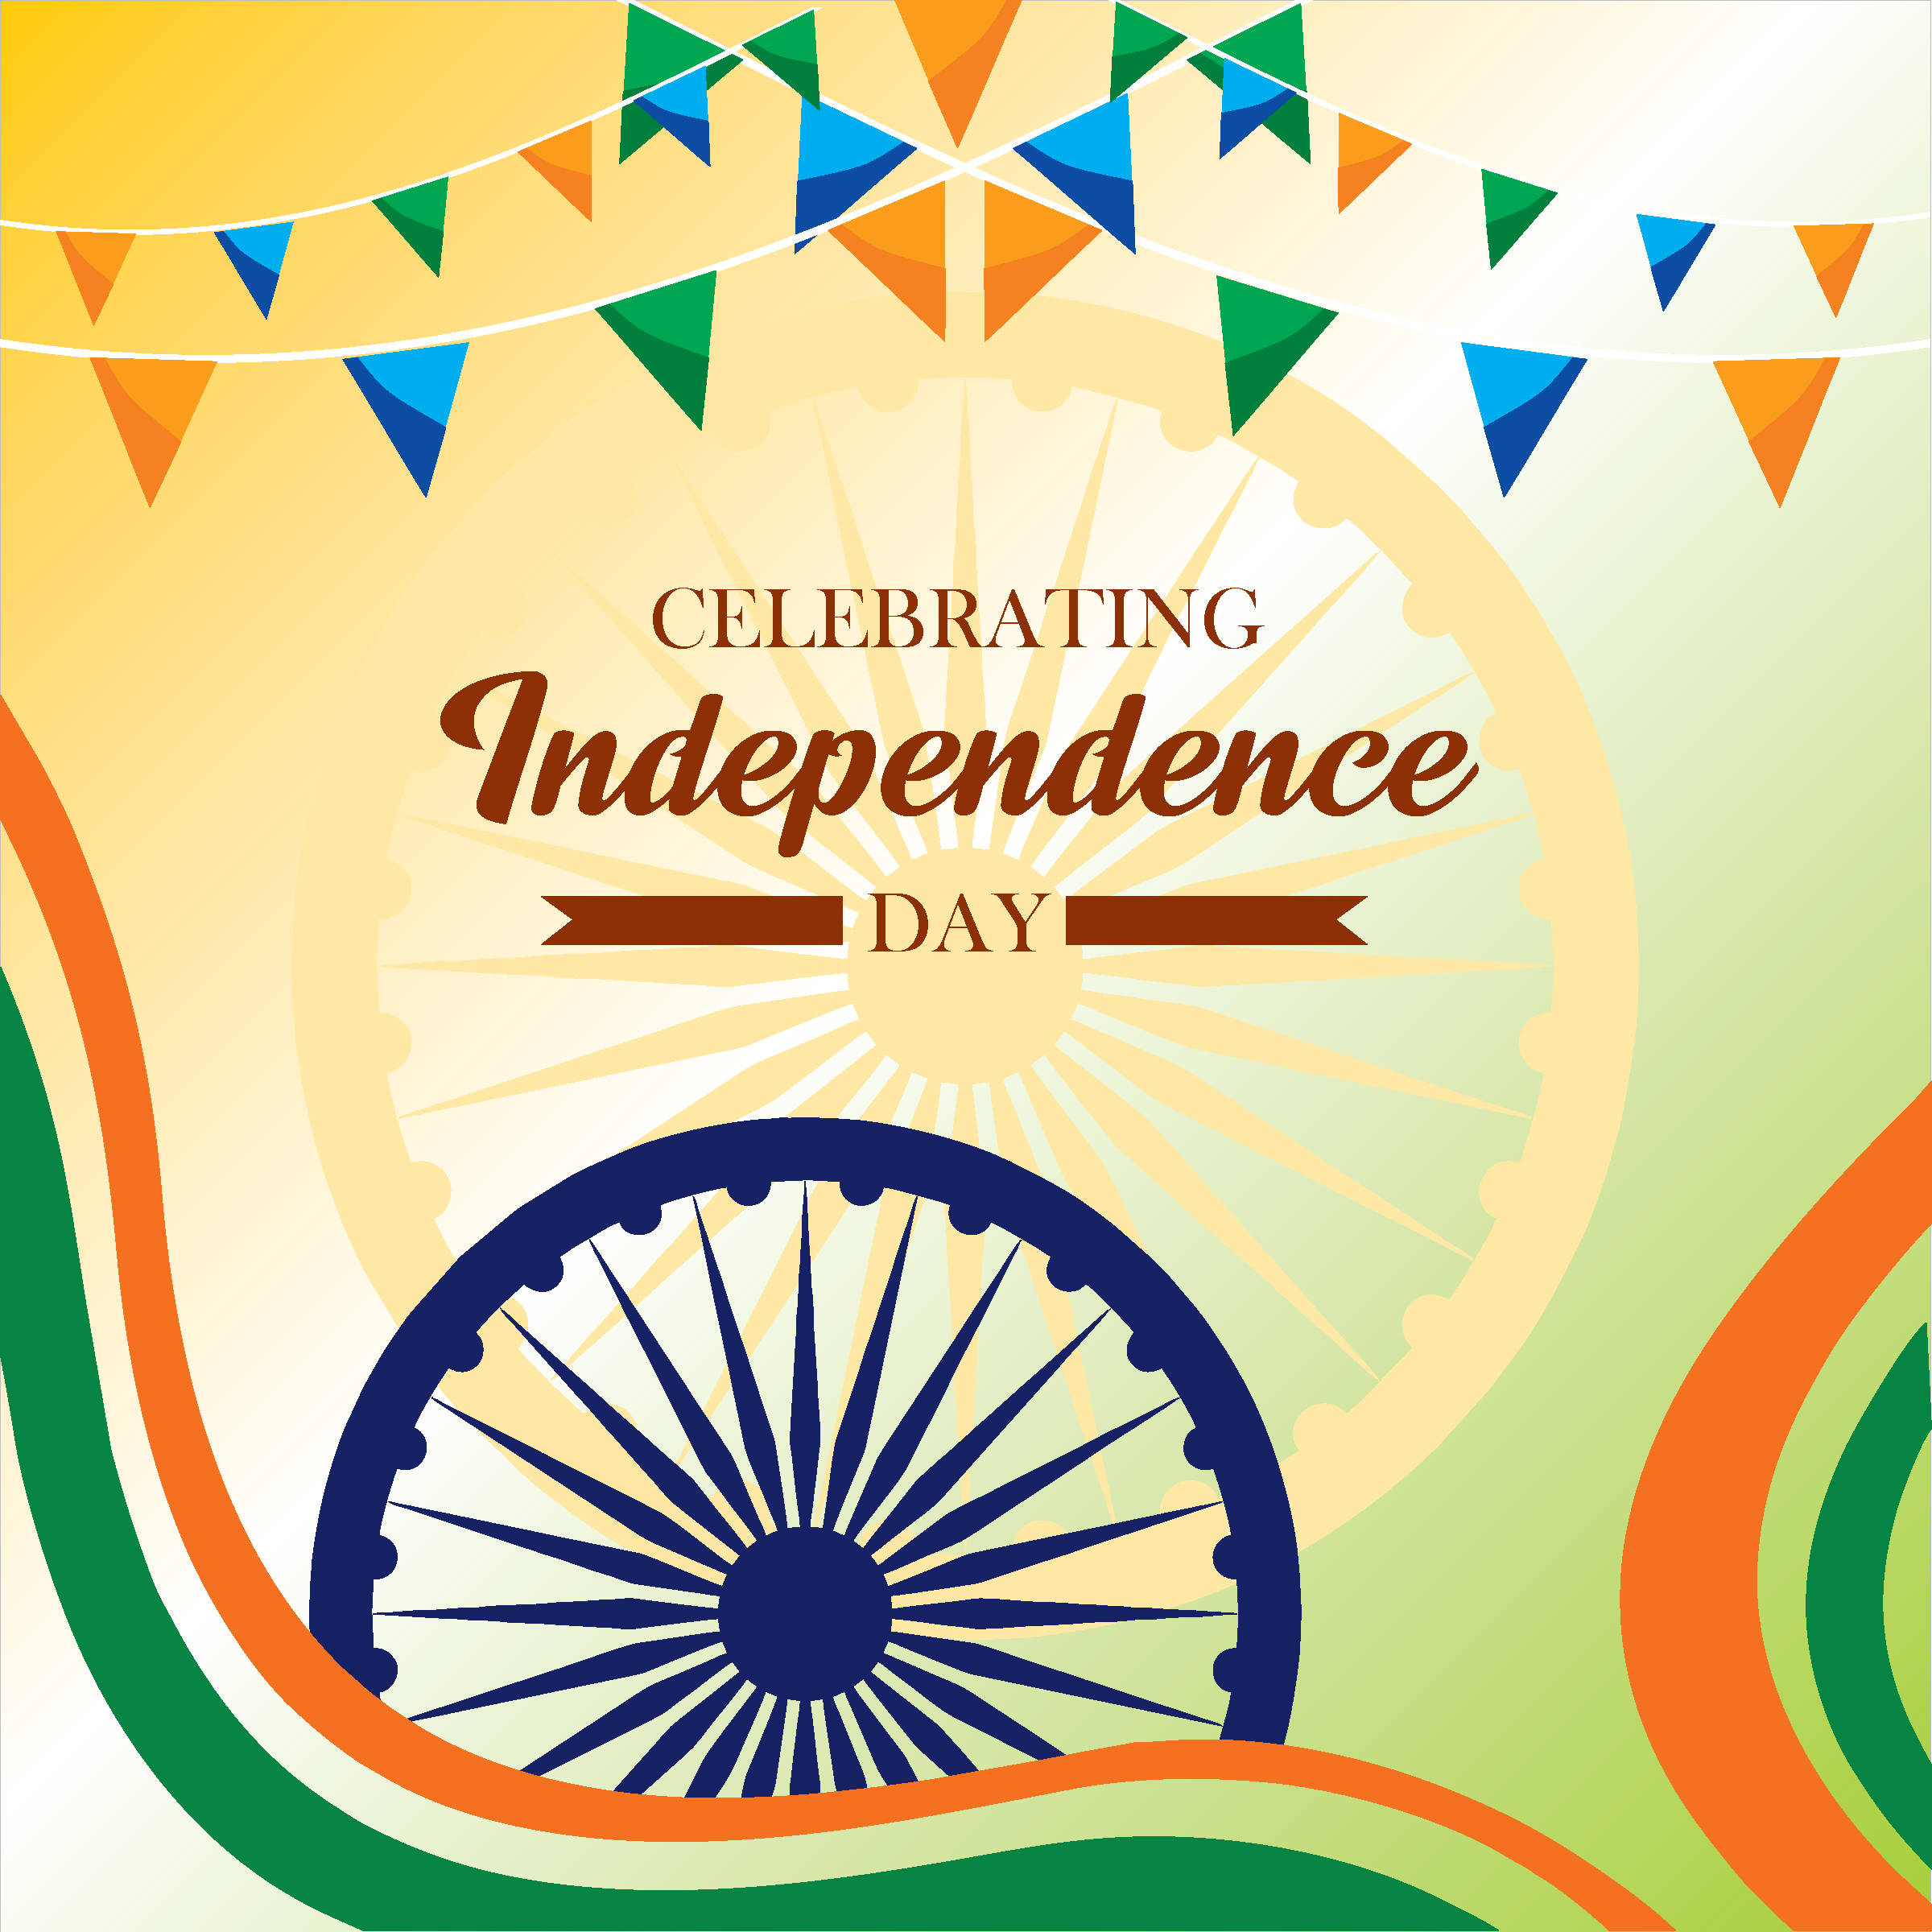 Thiết kế Vector ngày độc lập Ấn Độ 15 tháng 8 là một tác phẩm nghệ thuật tuyệt vời. Được thiết kế bằng công nghệ Vector chuyên nghiệp, những hình ảnh này sẽ giúp bạn cảm nhận sự tuyệt vời của ngày độc lập Ấn Độ 15 tháng 